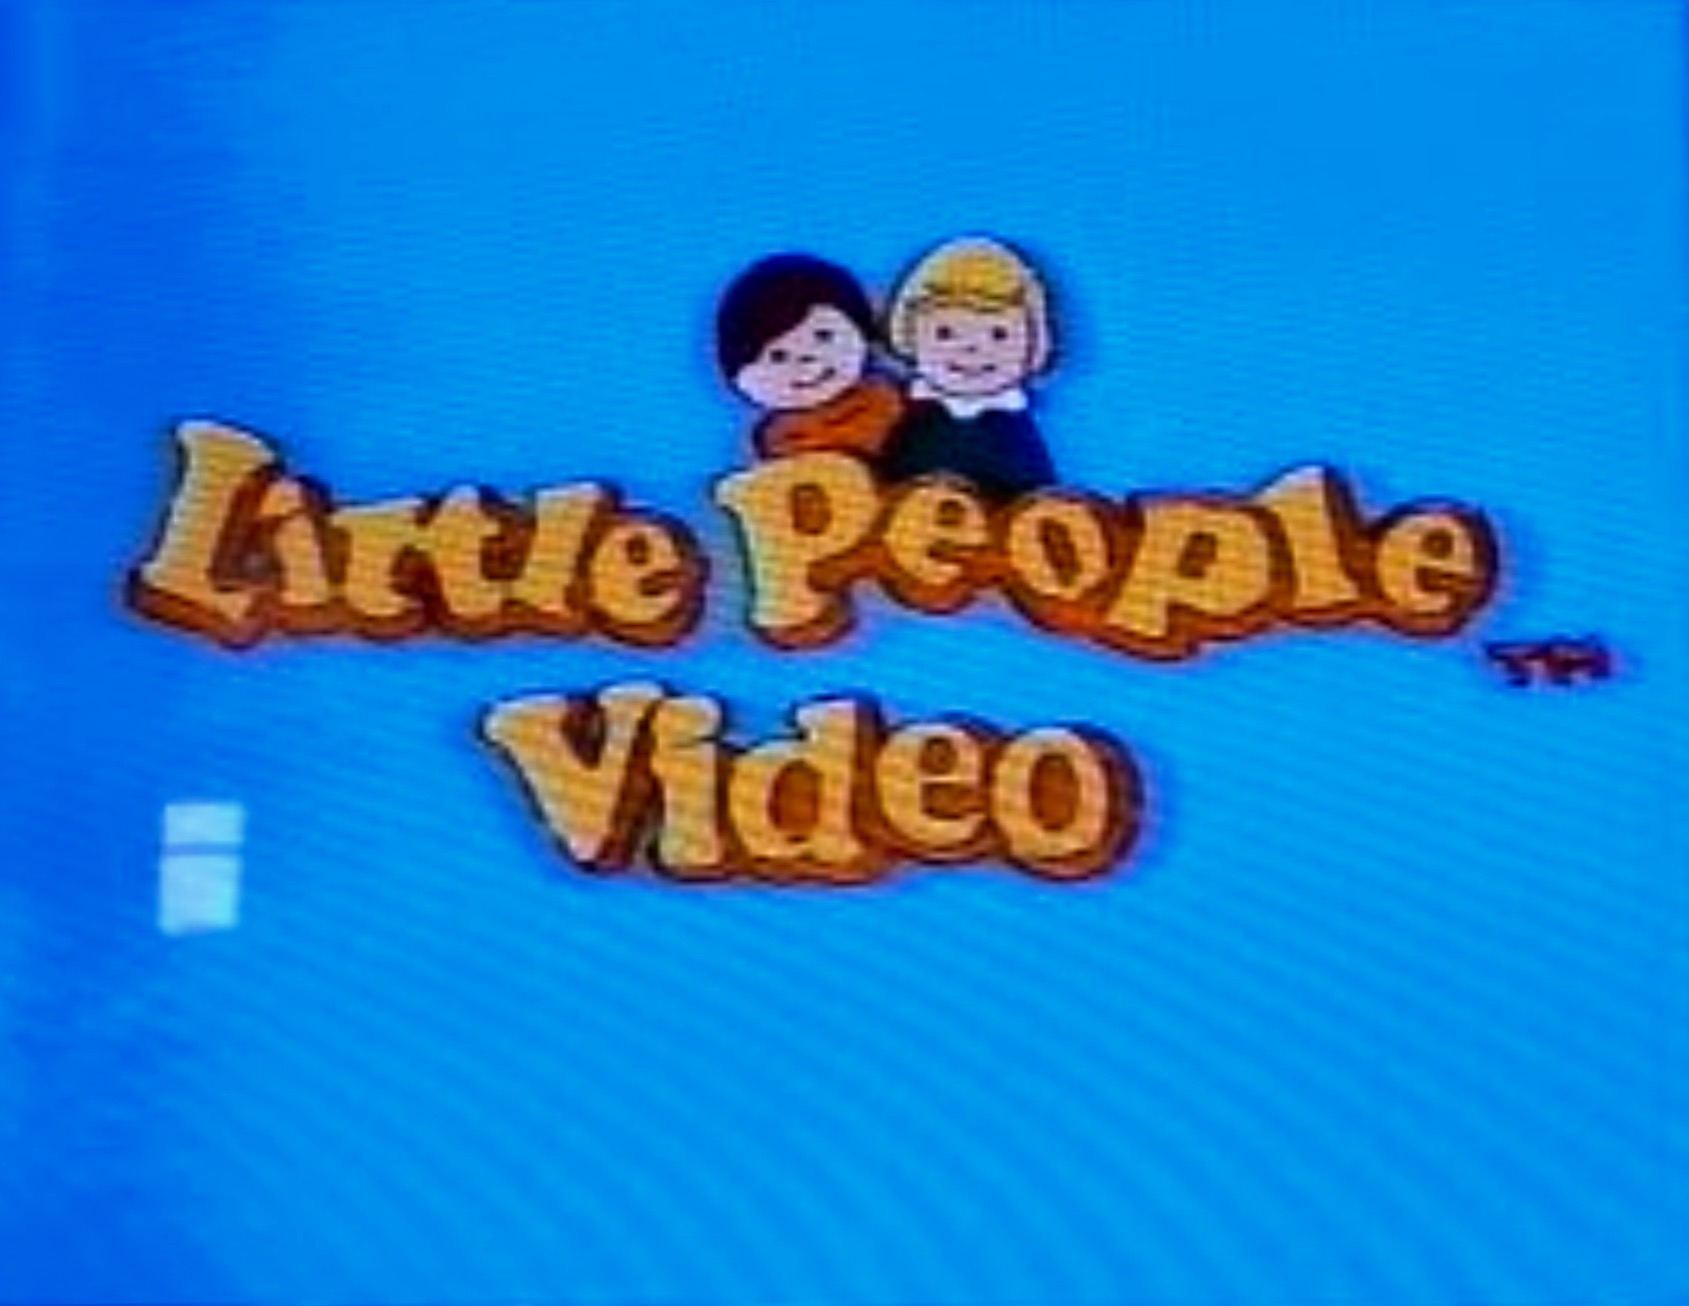 Little people video title.jpg